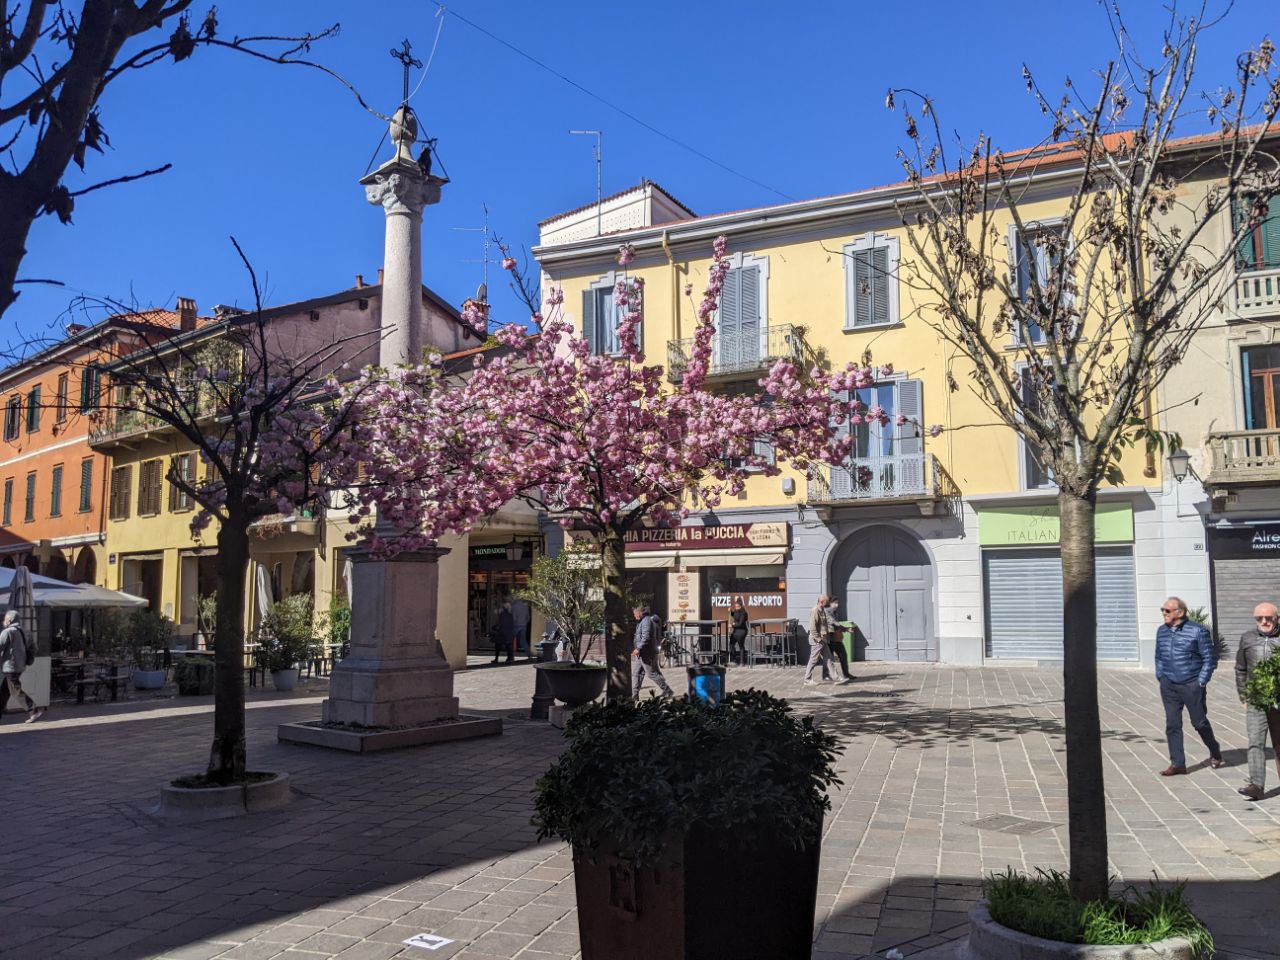 Ieri su ilS: barbecue abusivo sotto il monumento, ultimi scatti per fioritura rosa in piazzetta Croce, Ob Sar conferma le dimissioni alla Focris